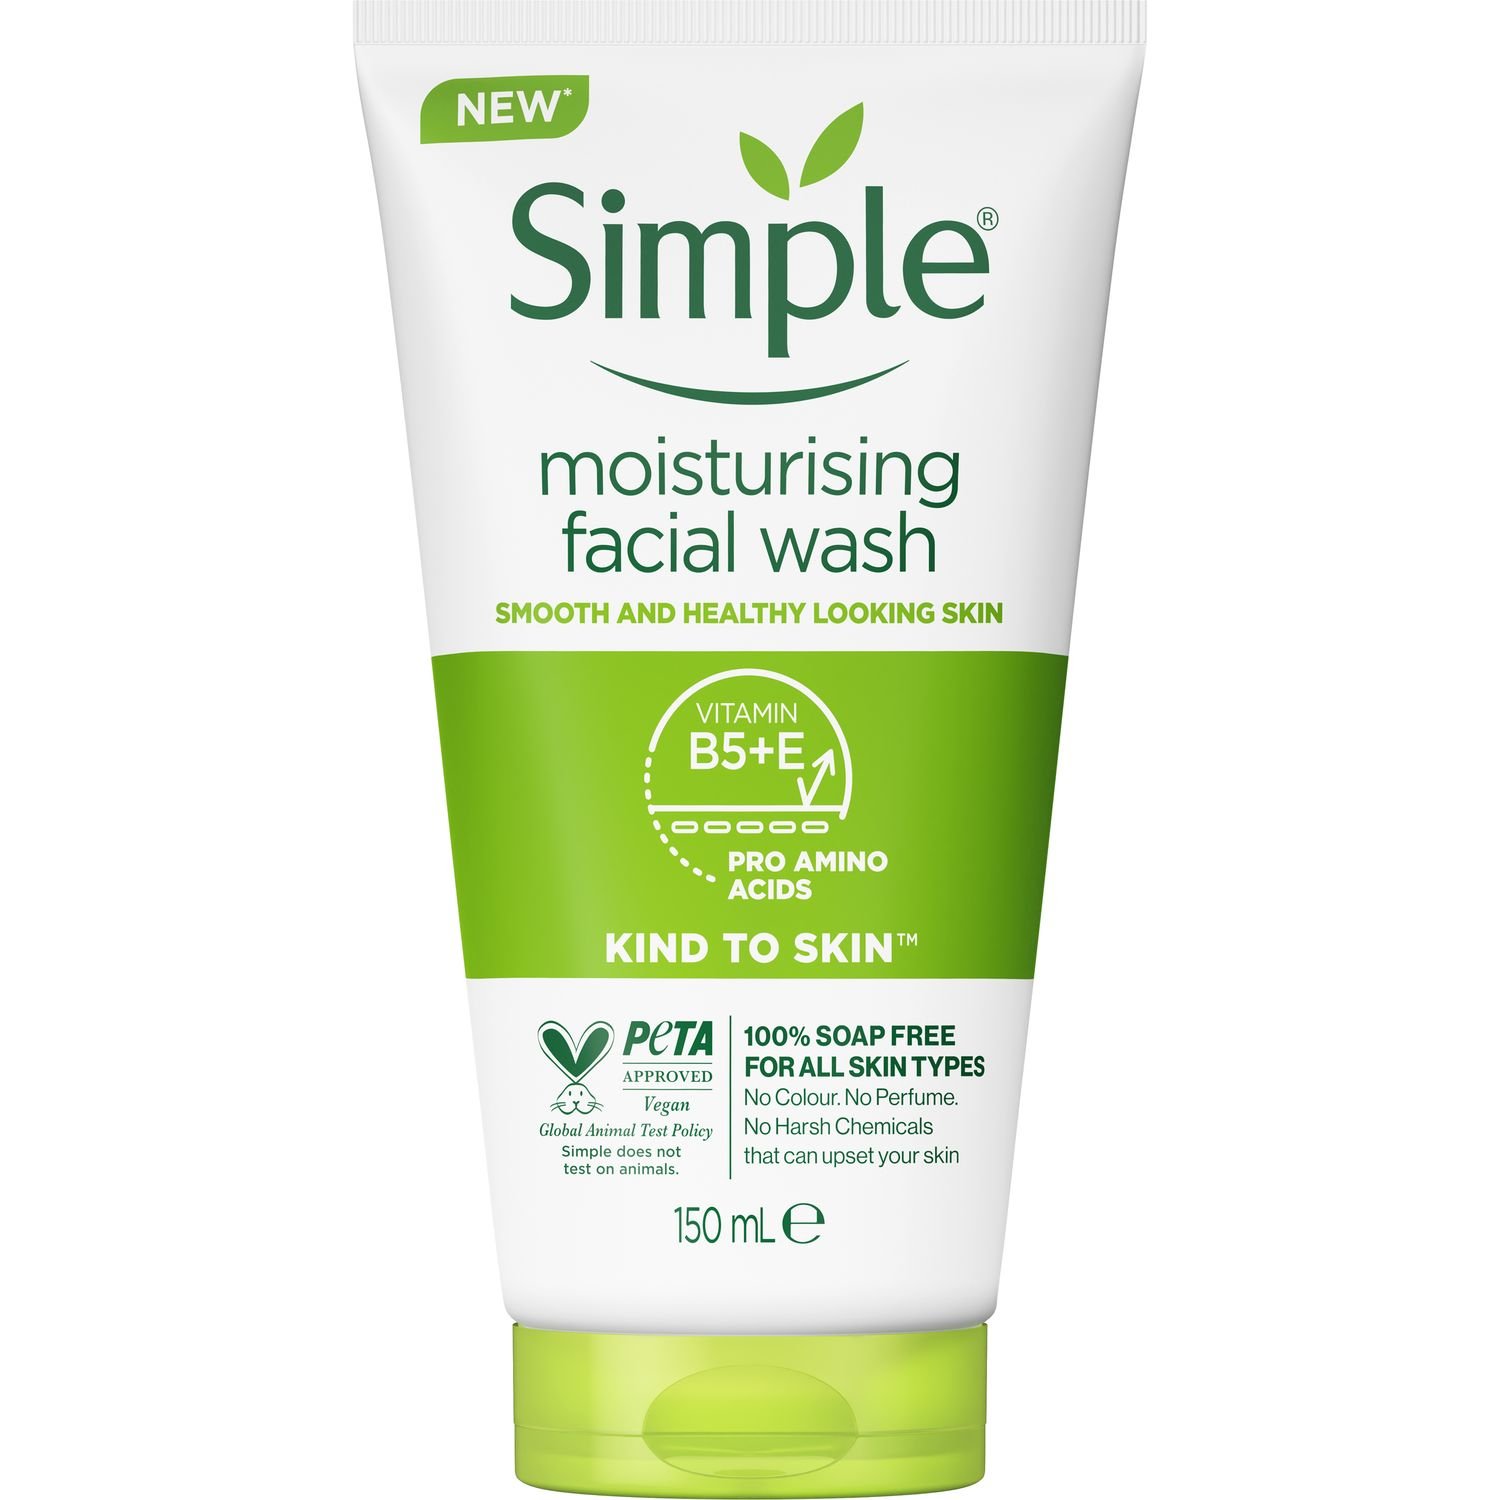 Увлажняющий гель для умывания Simple Kind to Skin Moisturising Facial Wash, 150 мл - фото 2